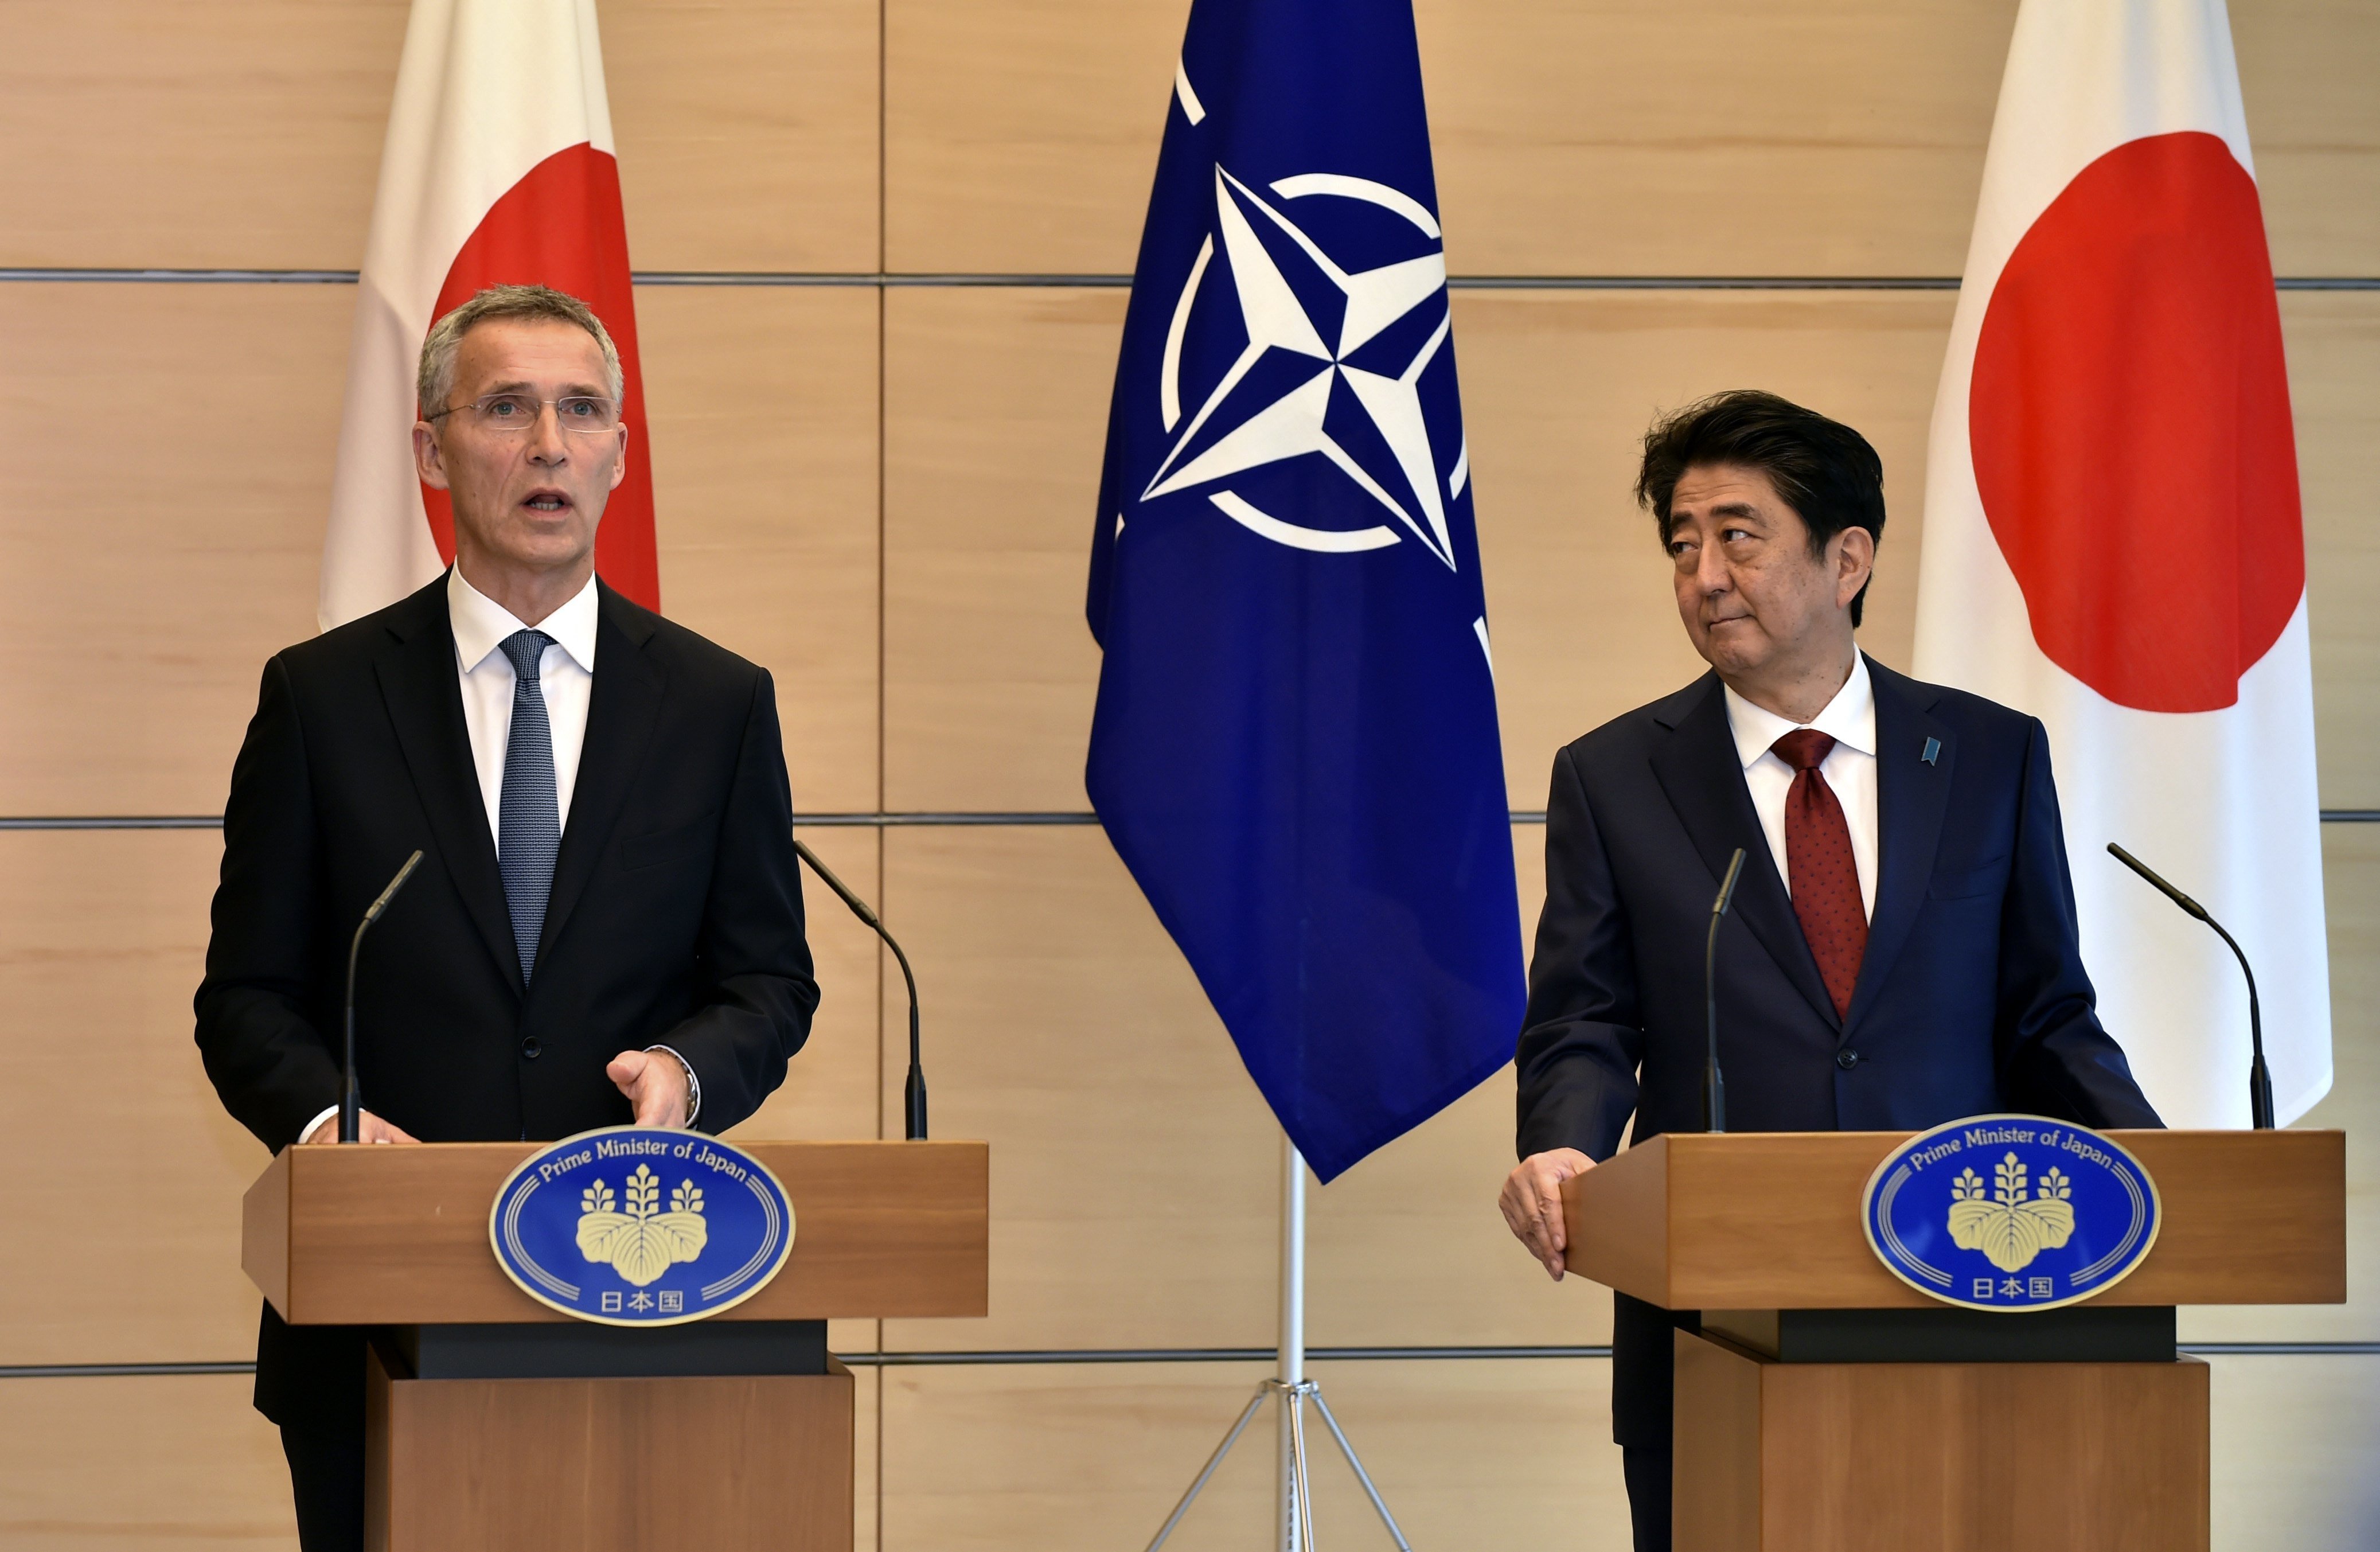 L'OTAN i el Japó demanen una resolució "pacífica" del conflicte nord-coreà